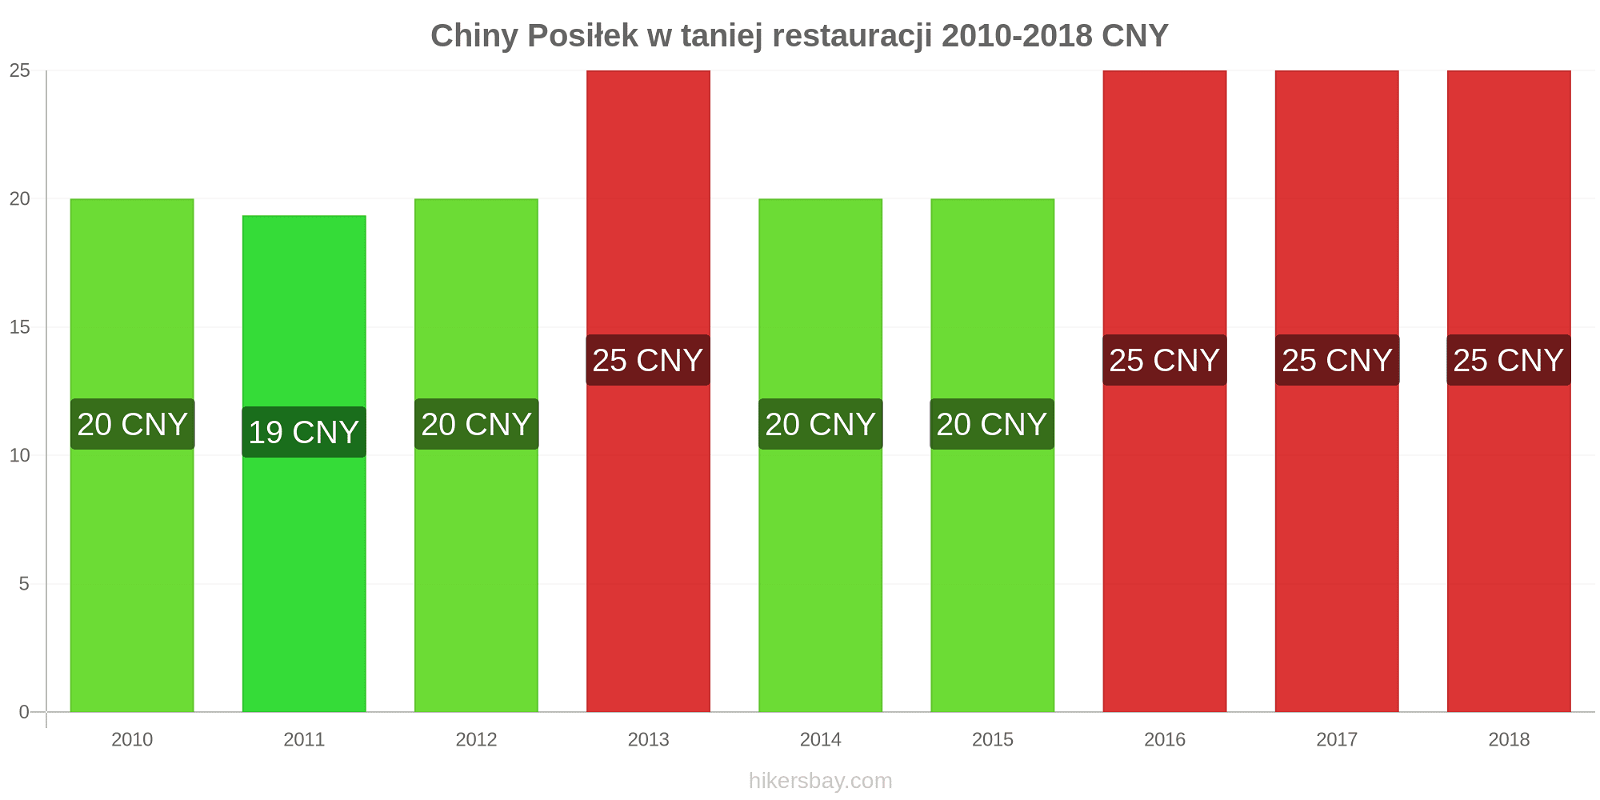 Chiny zmiany cen Posiłek w taniej restauracji hikersbay.com